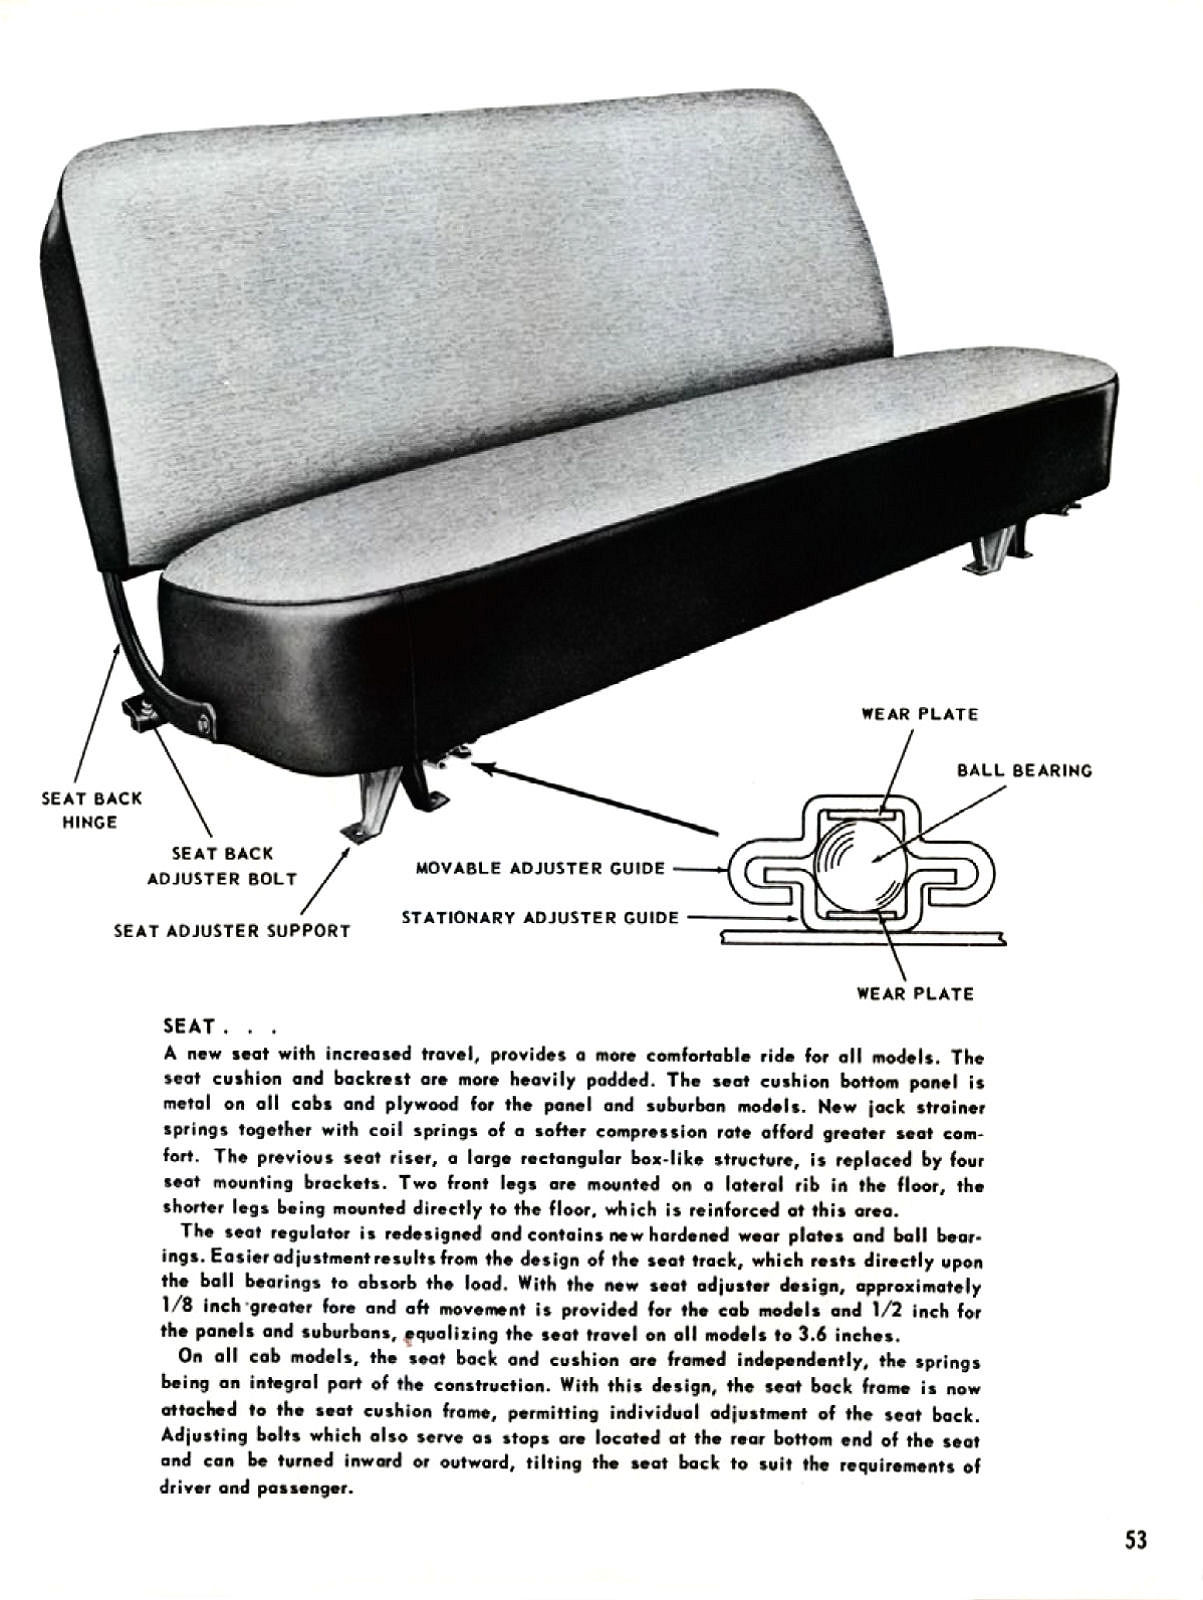 1955_Chevrolet_Truck_Engineering_Features-053